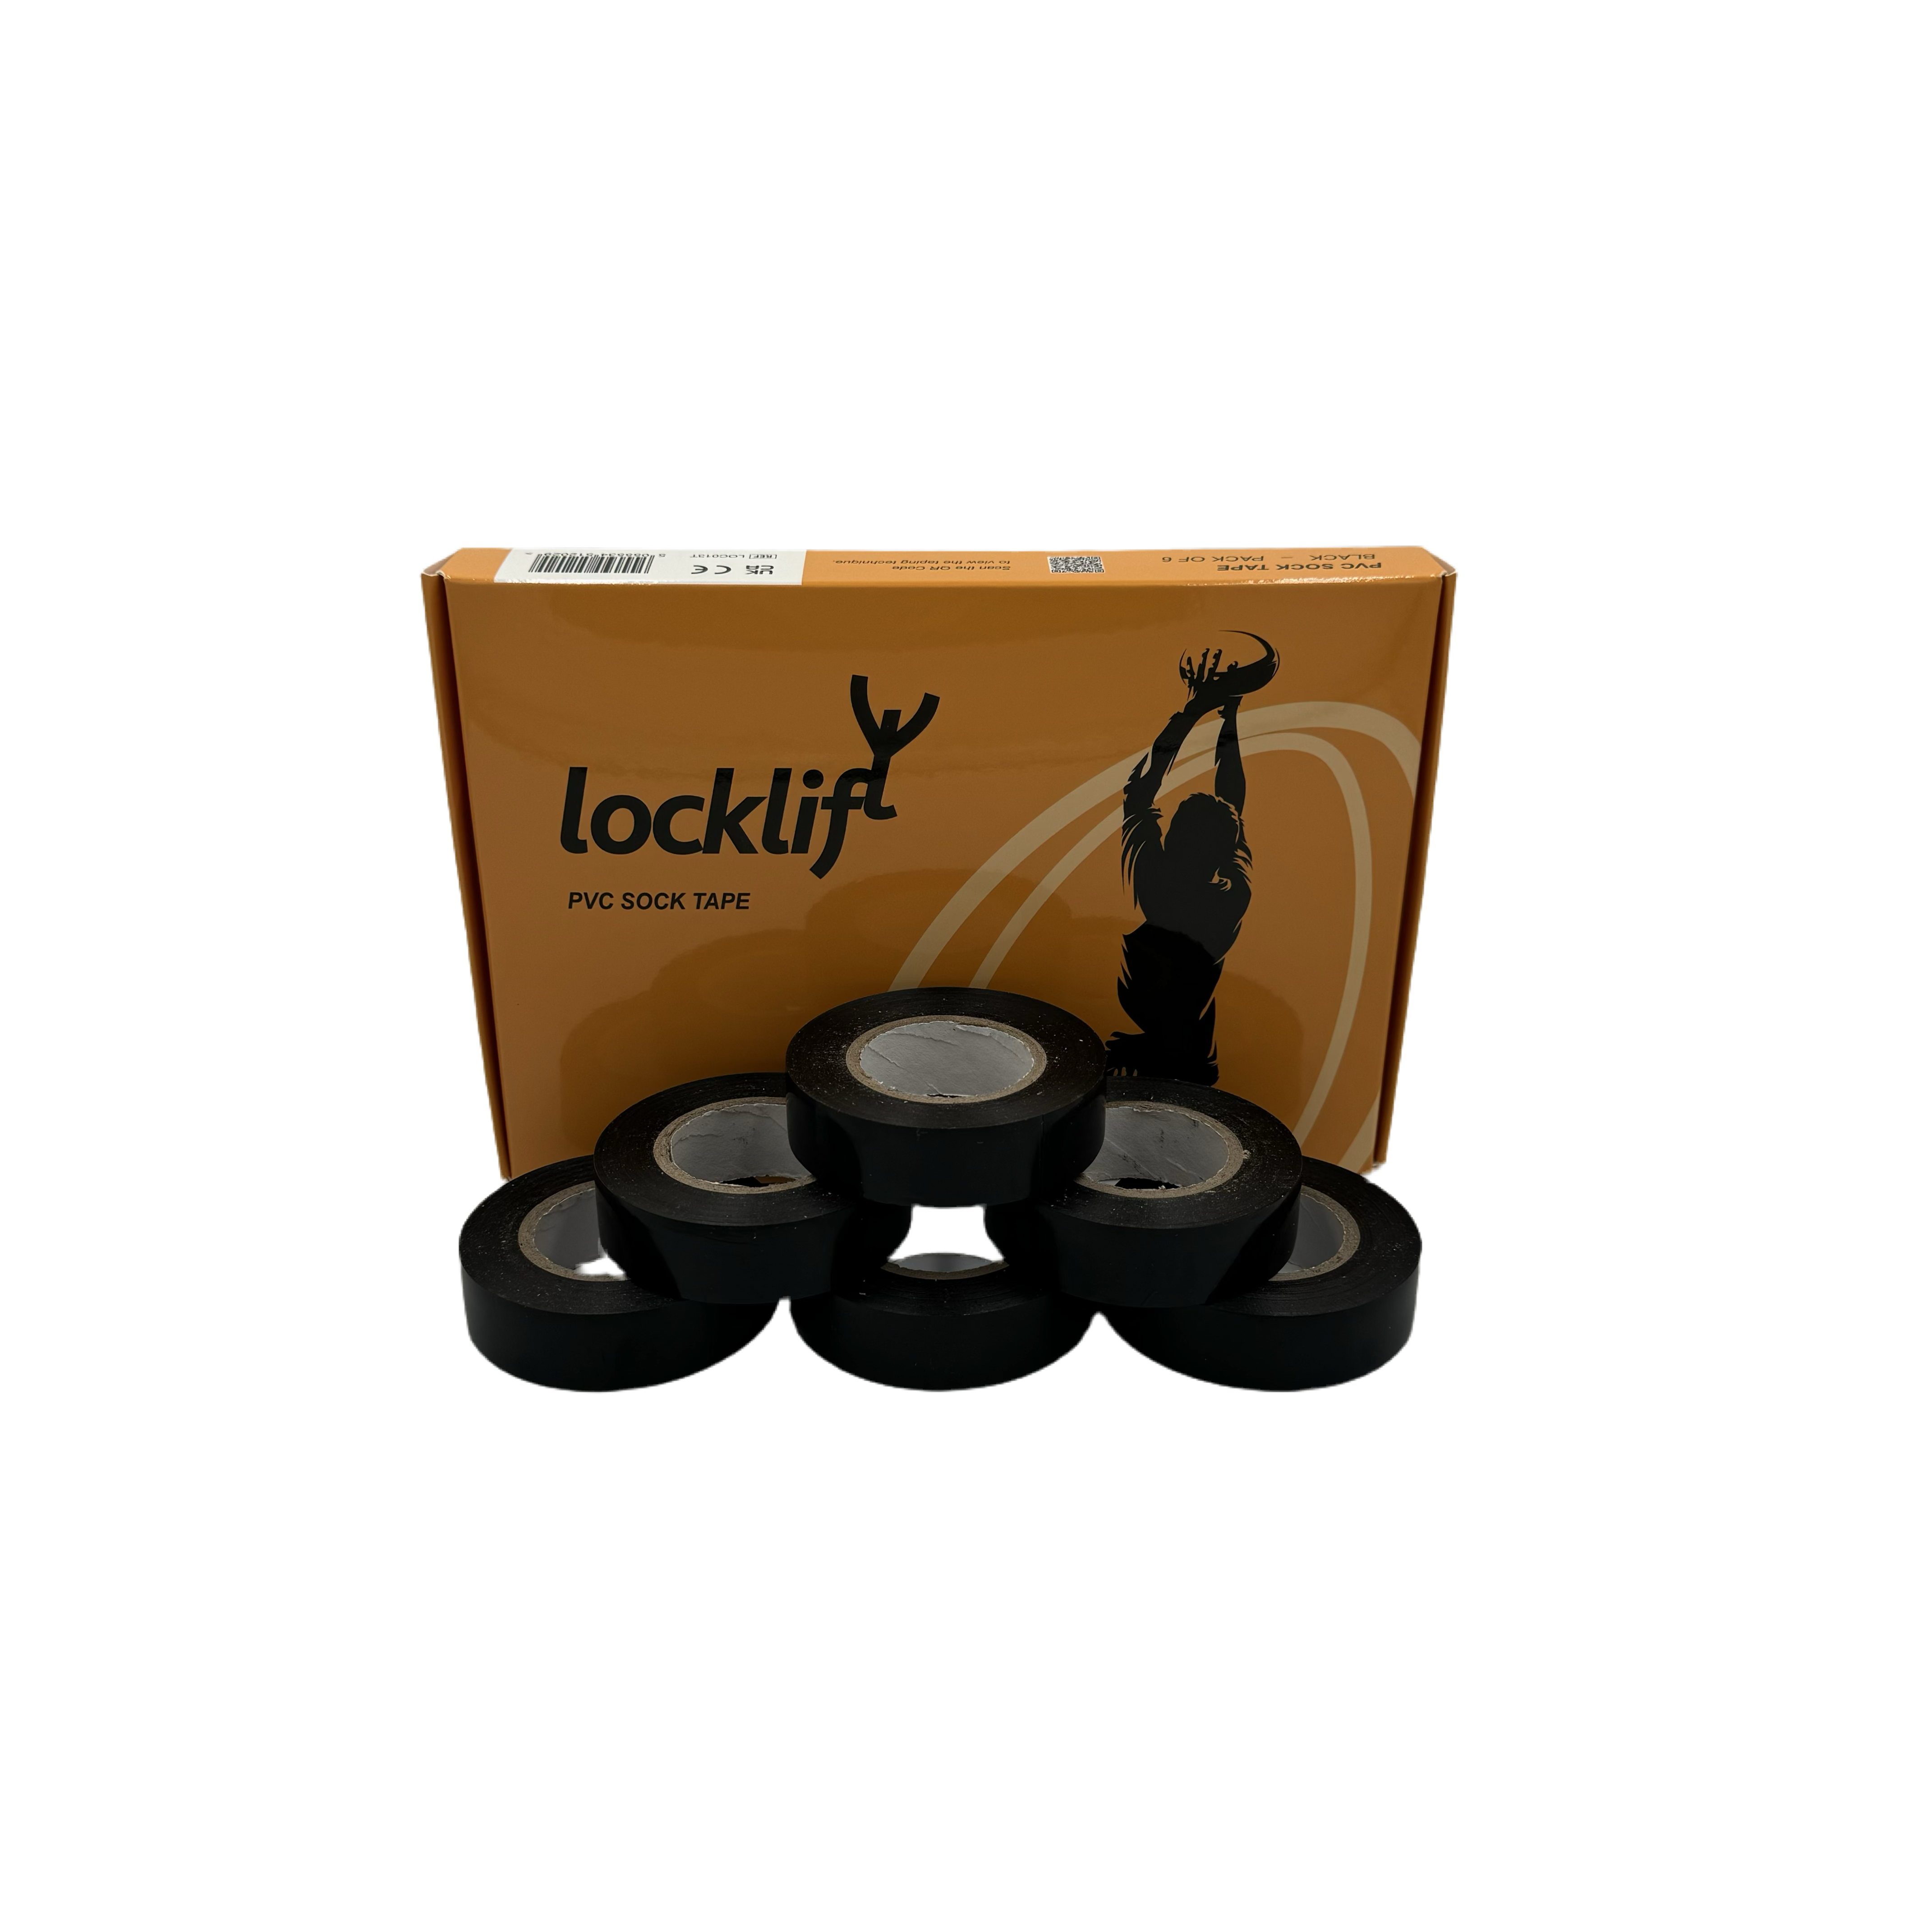 locklift sock tape - 6 rolls of locklift pvc sock tape